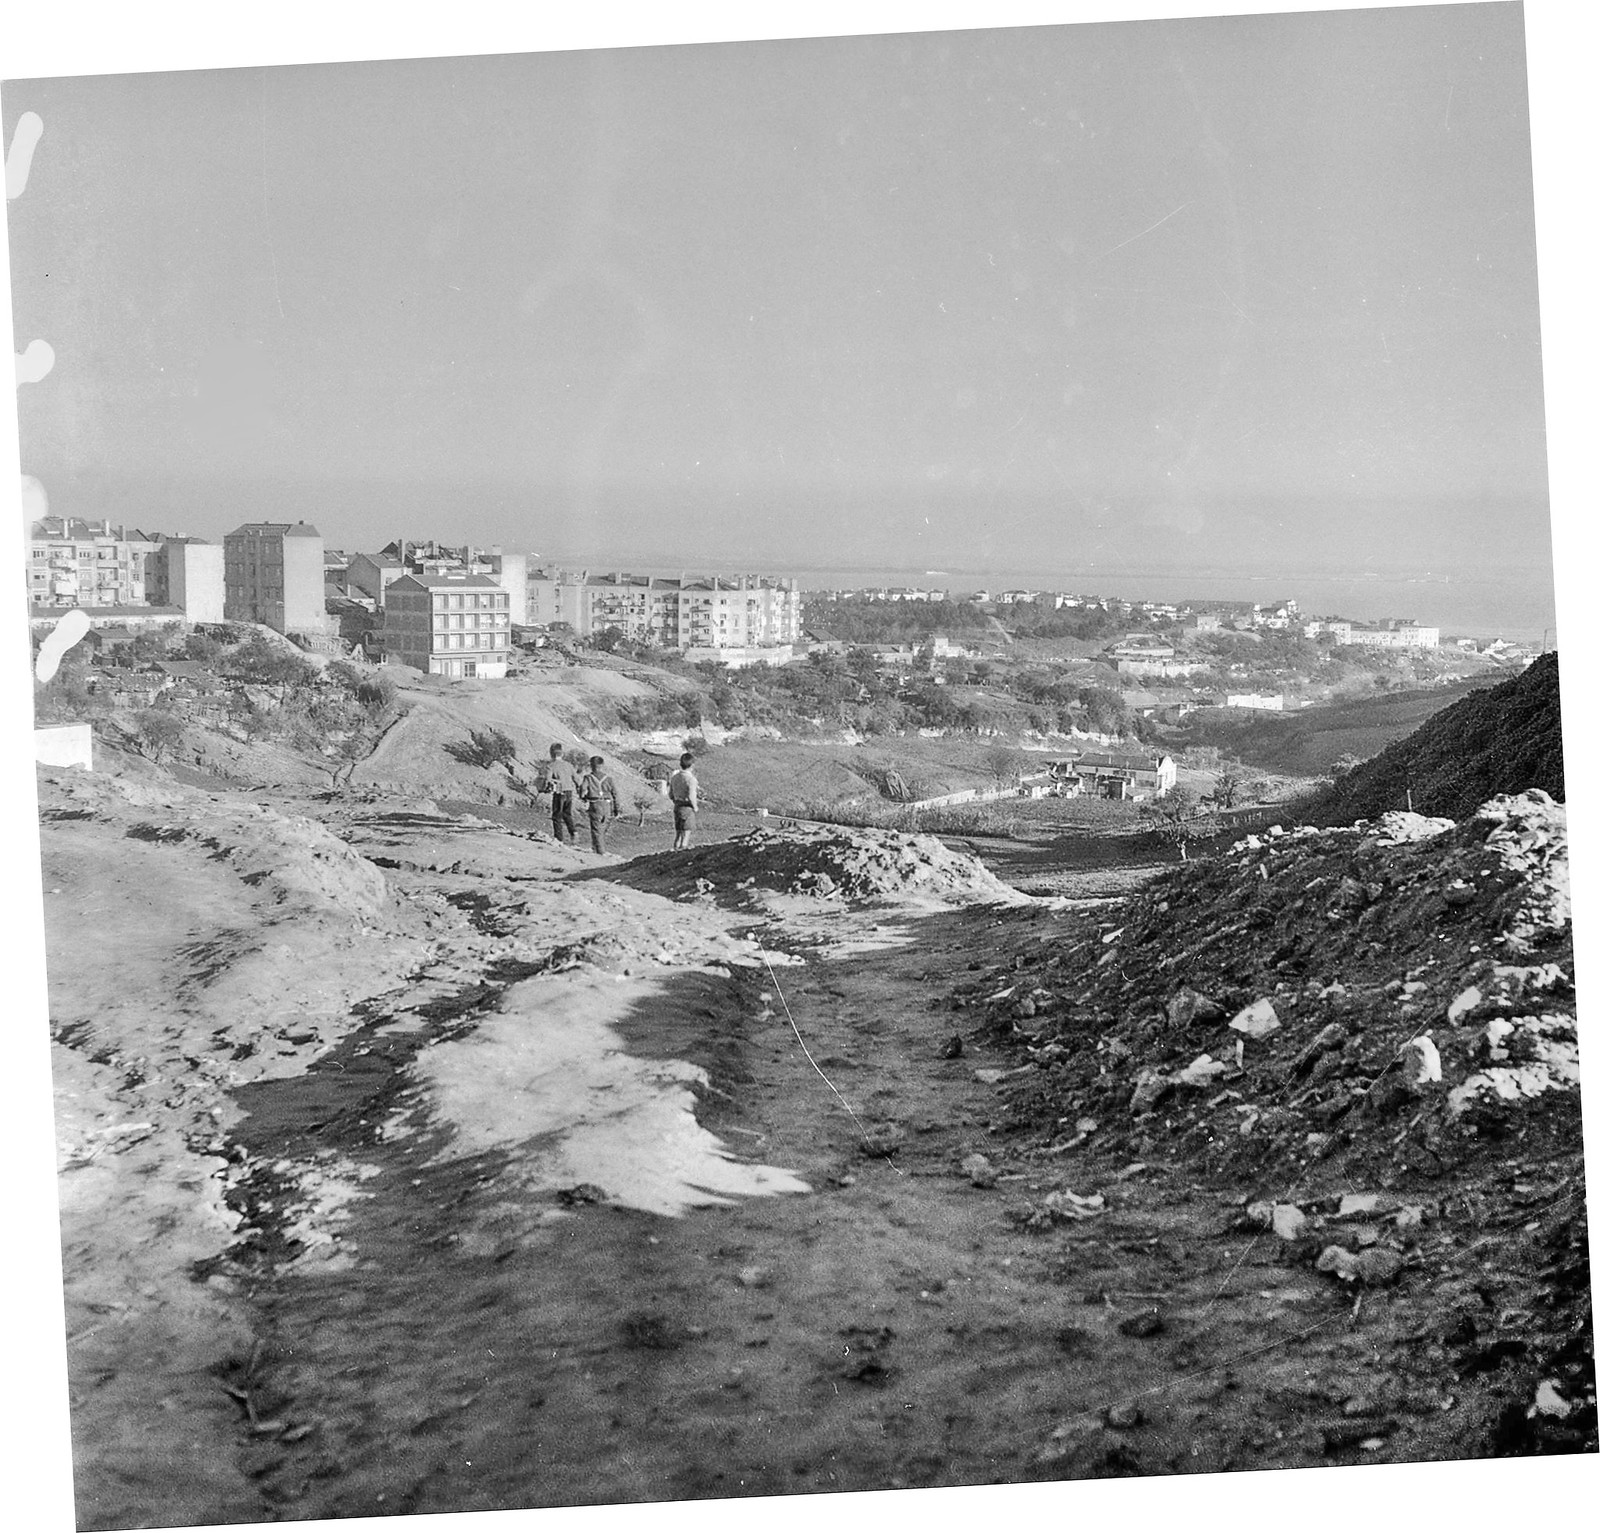 Vista sôbre a Picheleira, Madre de Deus e vale de Xabregas, Alto do Pina (A. Goulart, 1962)